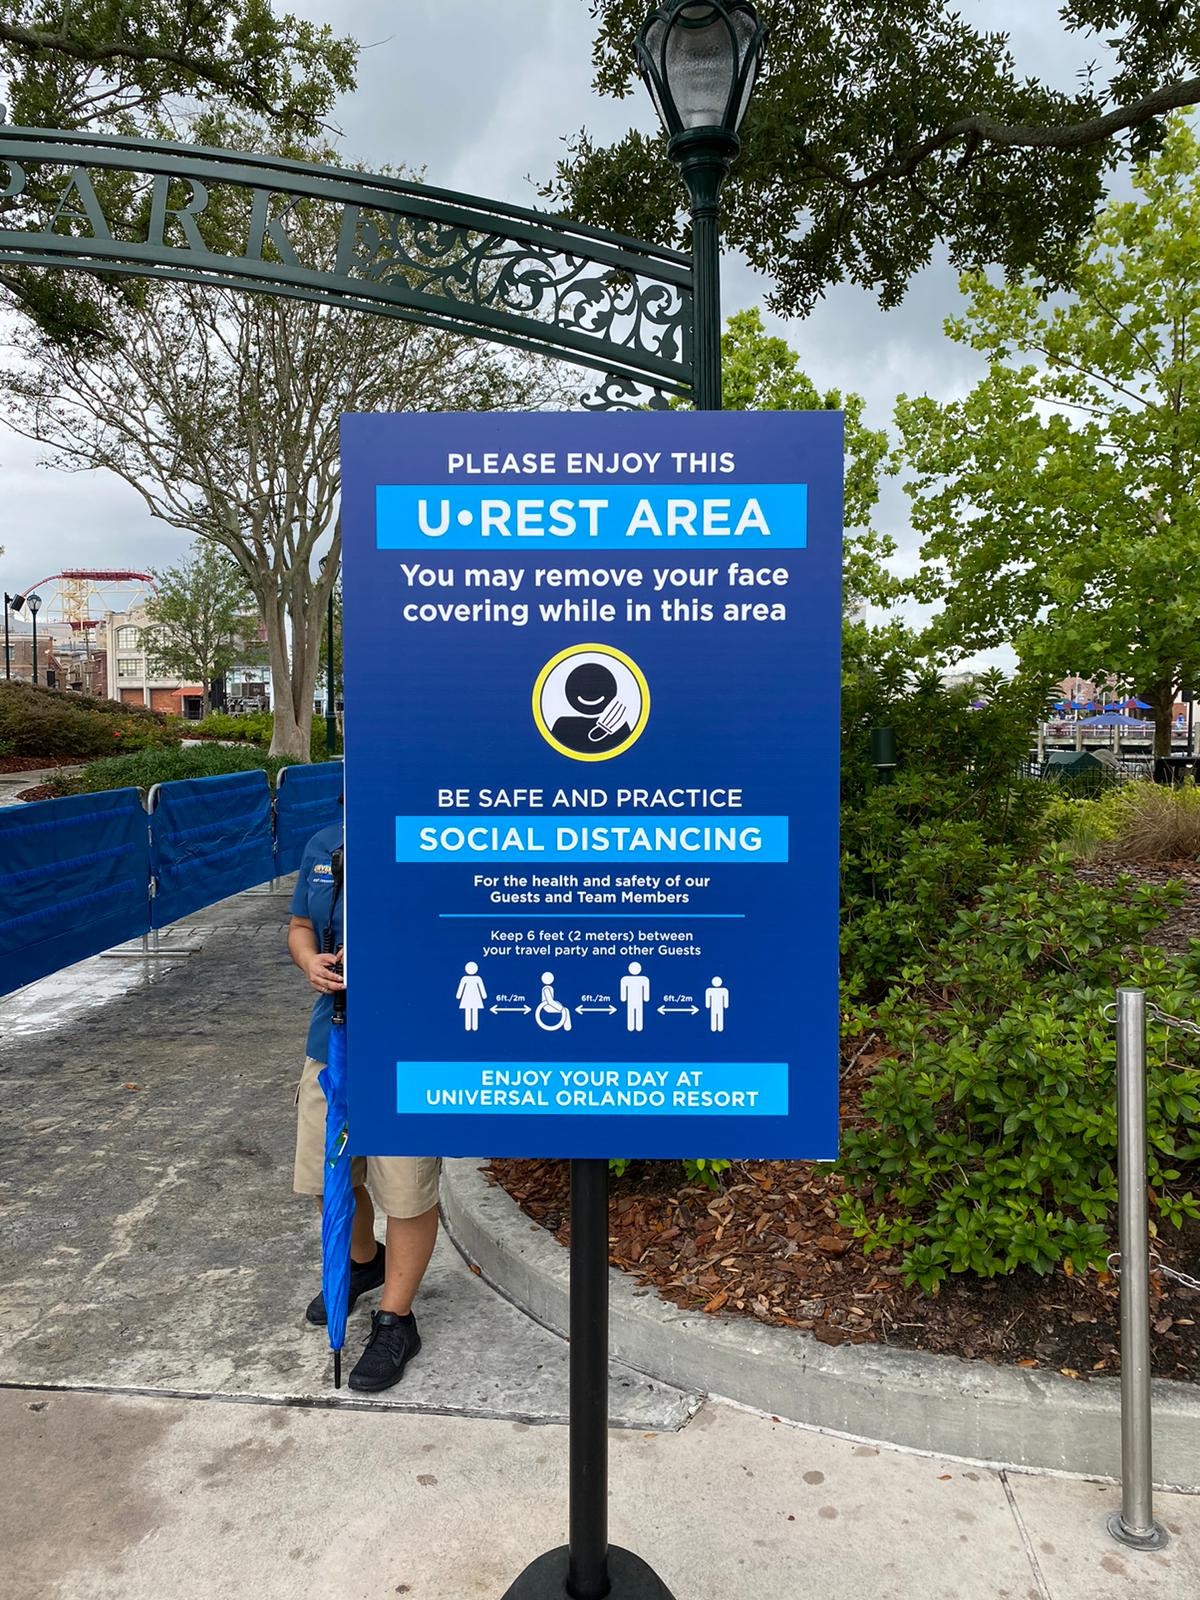 Acompanhamos o primeiro dia de abertura dos parques da Universal Studios em Orlando pós quarentena de coronavirus (Foto: Imagem concedia por Beatriz Rodrigues (@biarodrigs))